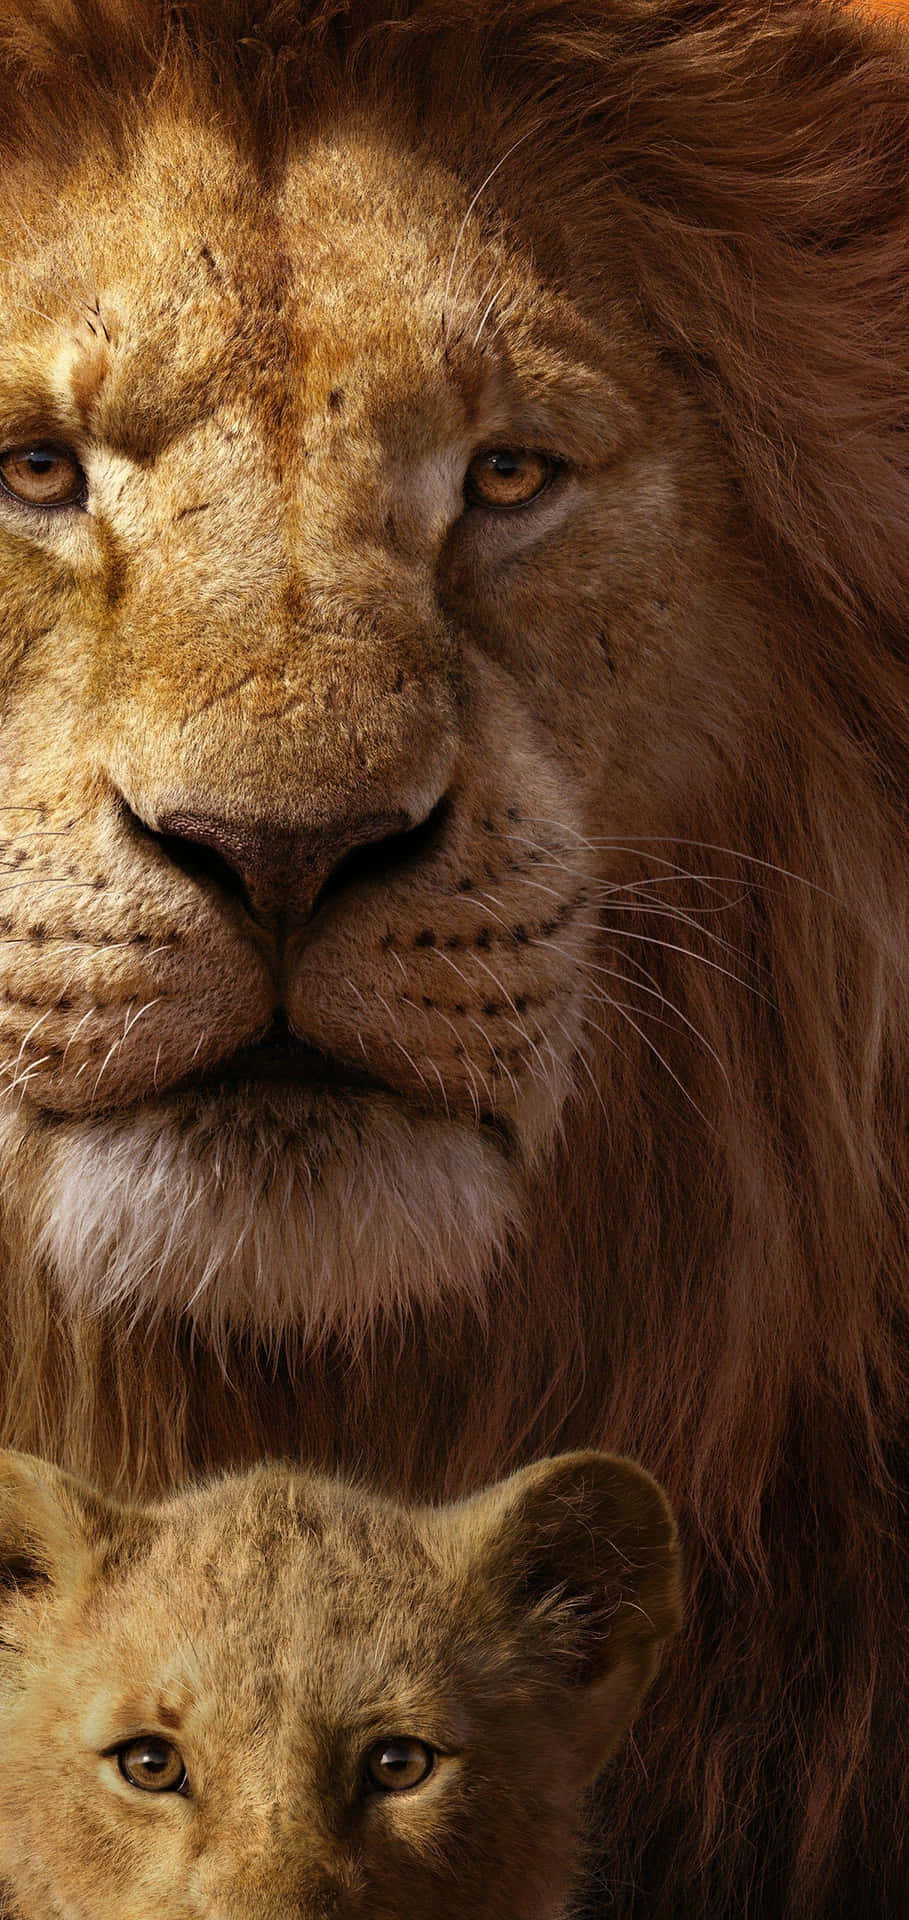 Majestic Lionand Cub Portrait Wallpaper